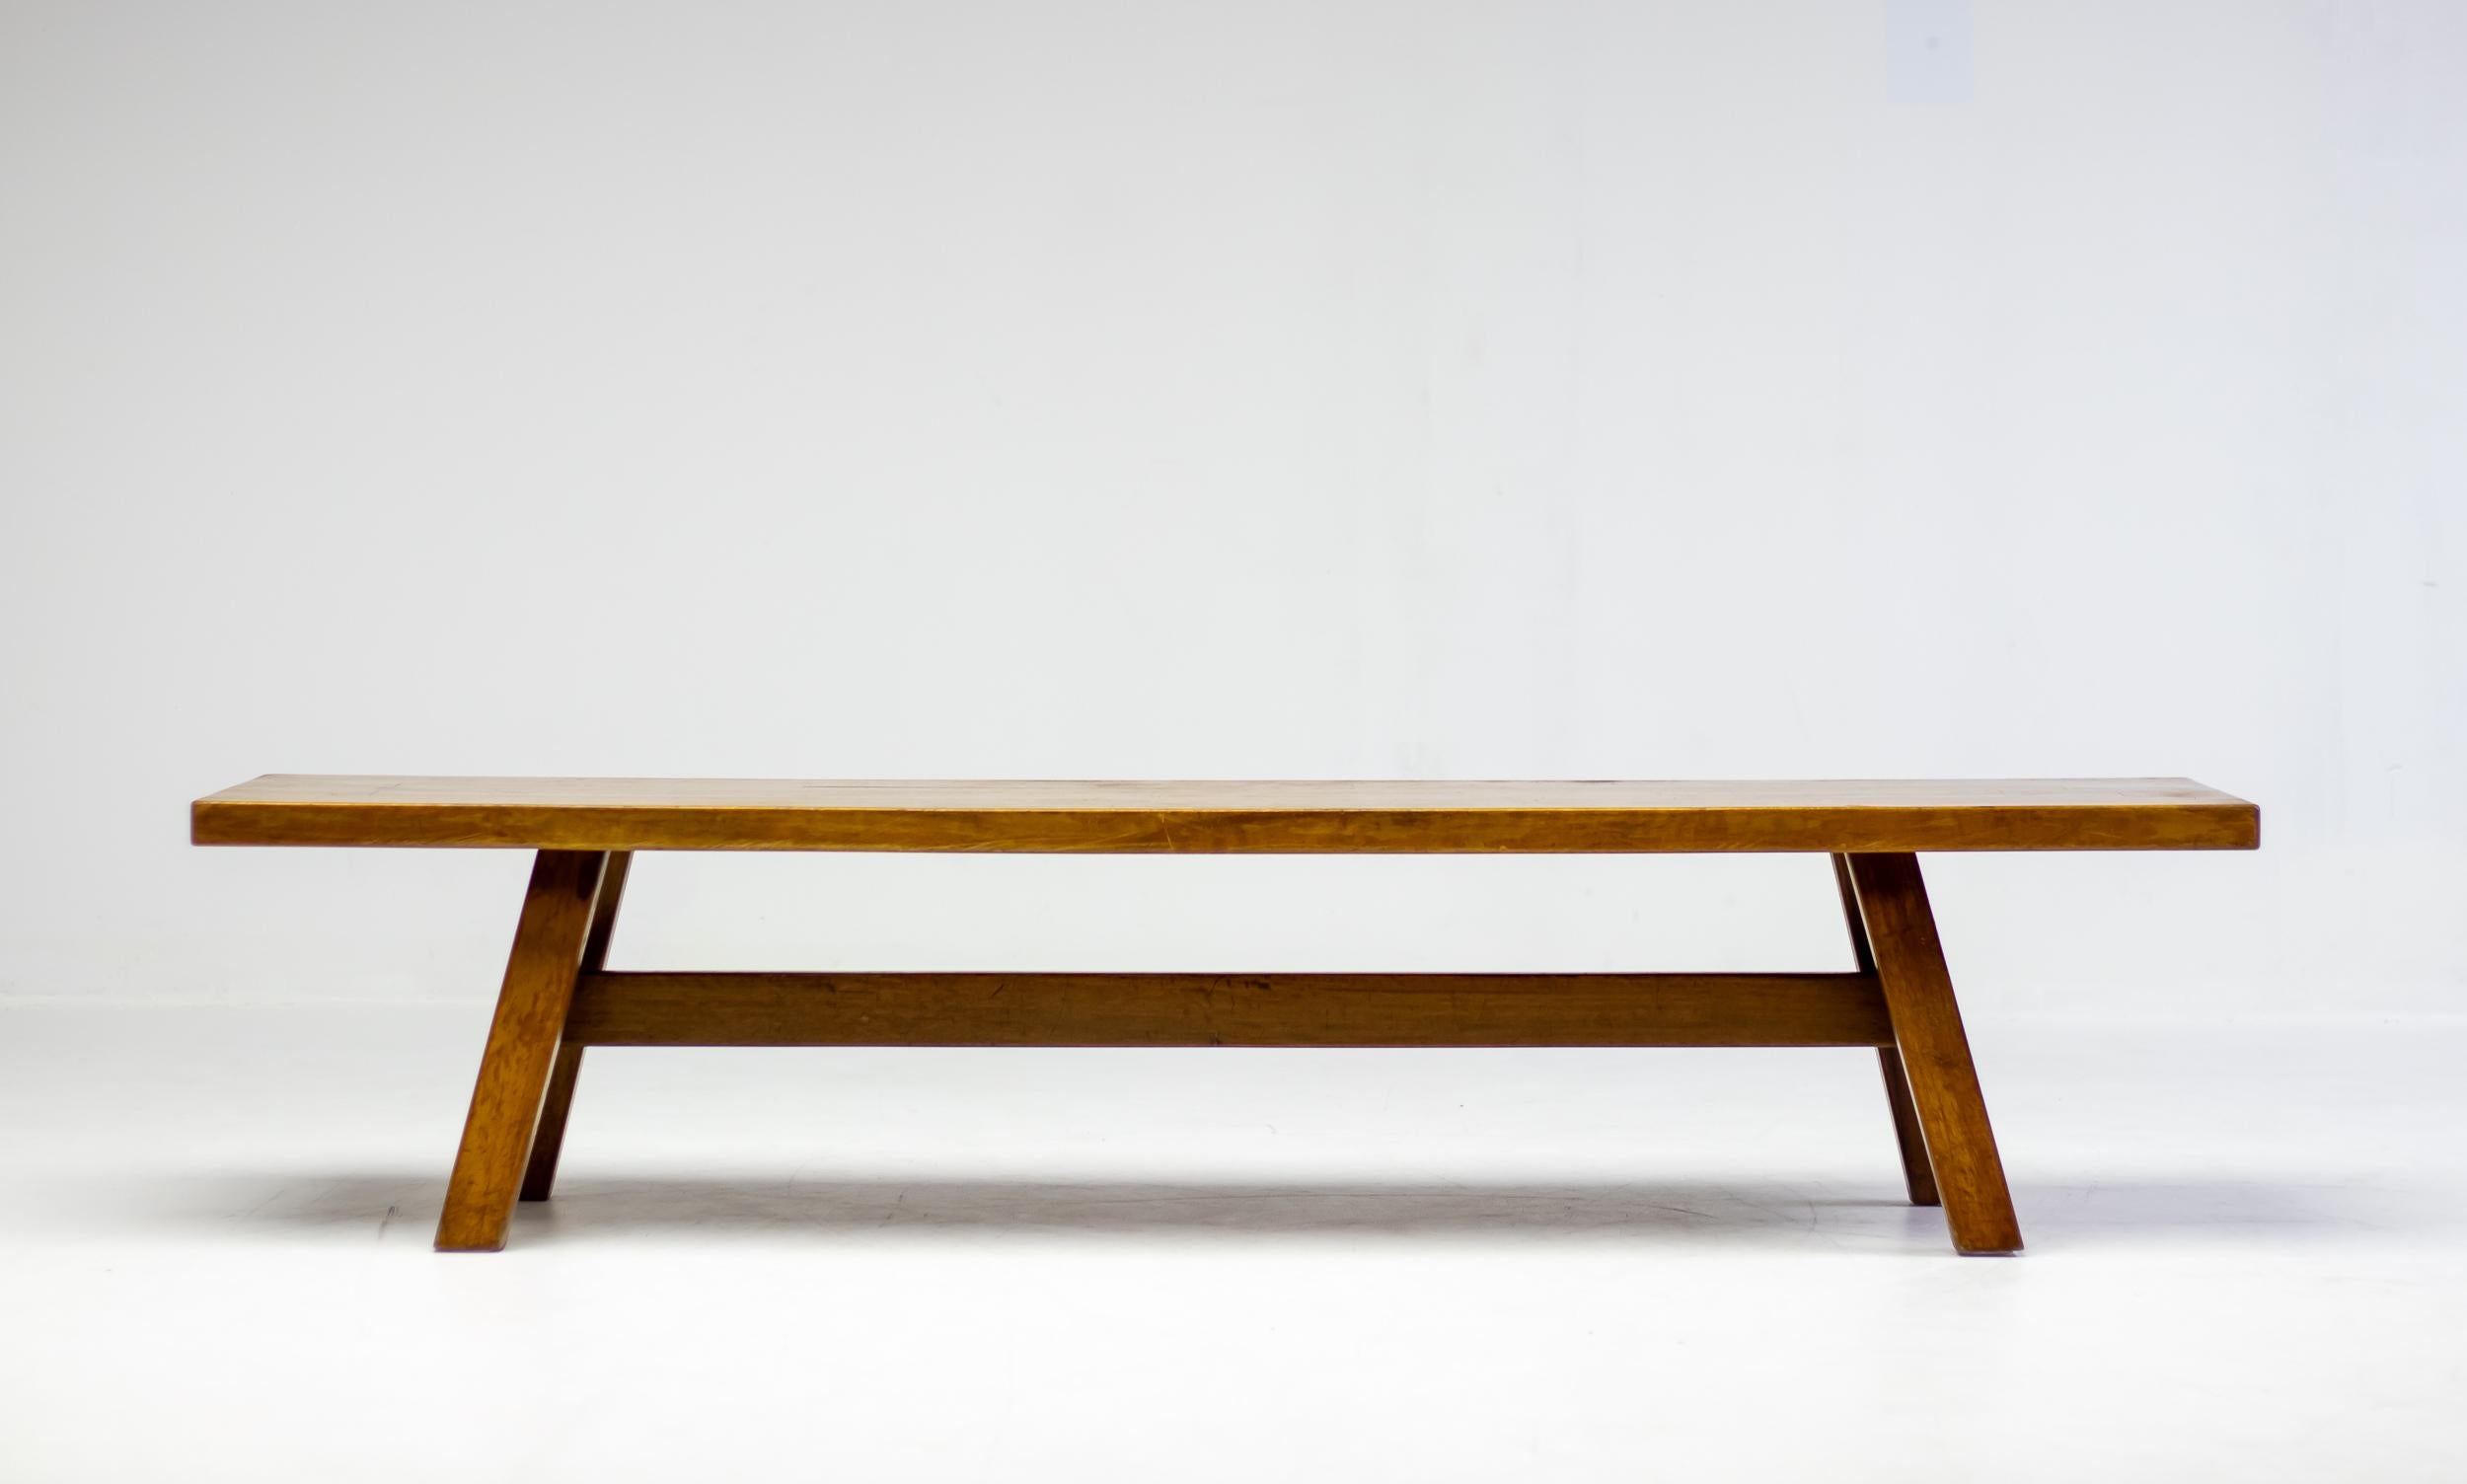 Sitzbank aus der Serie Torbecchia, entworfen vom brutalistischen Architekten Giovanni Michelucci für Poltronova, 1964. 
Massive Nussbaumstruktur mit schönen Kantendetails ähnlich wie bei Charlotte Perriand-Tischen. 
Dieses architektonische Stück